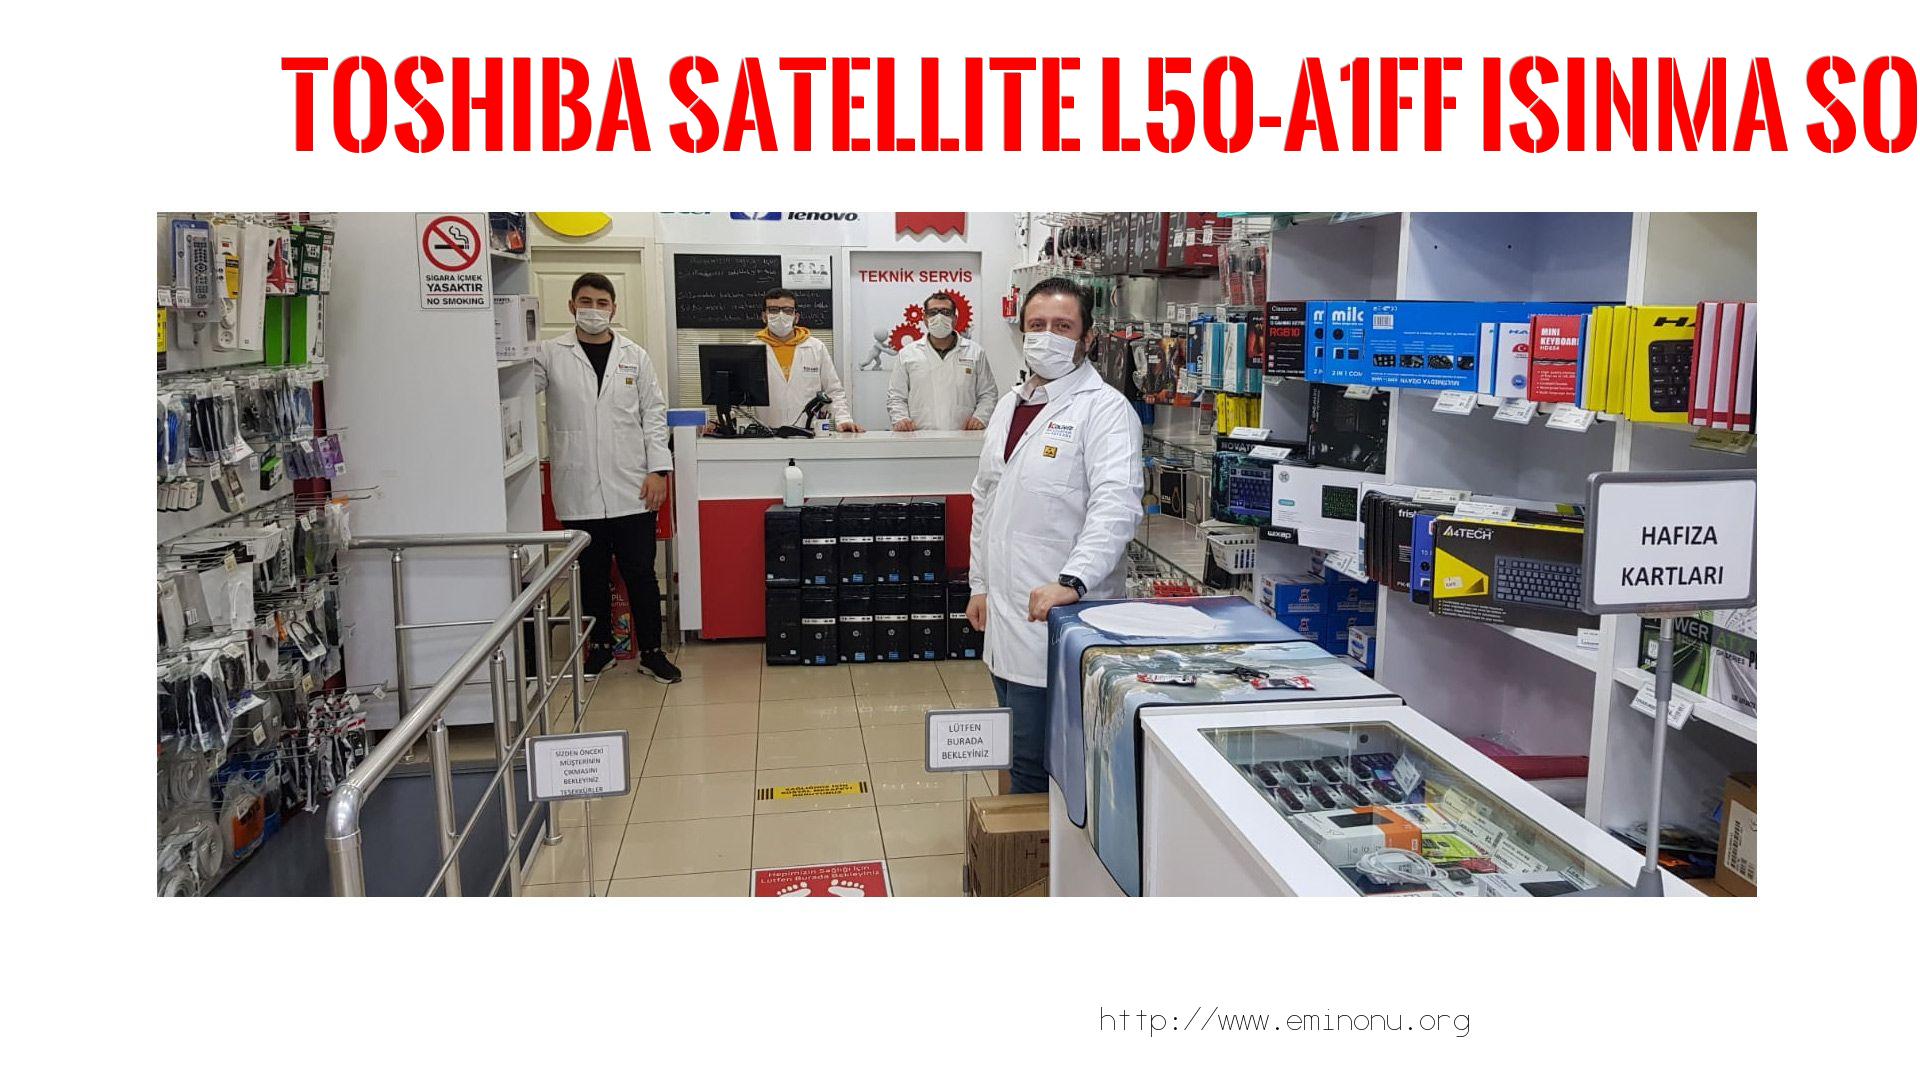 Marka Model Isınma Sorunu  Toshıba  Satellite L50-a1ff  ısınma sorunu